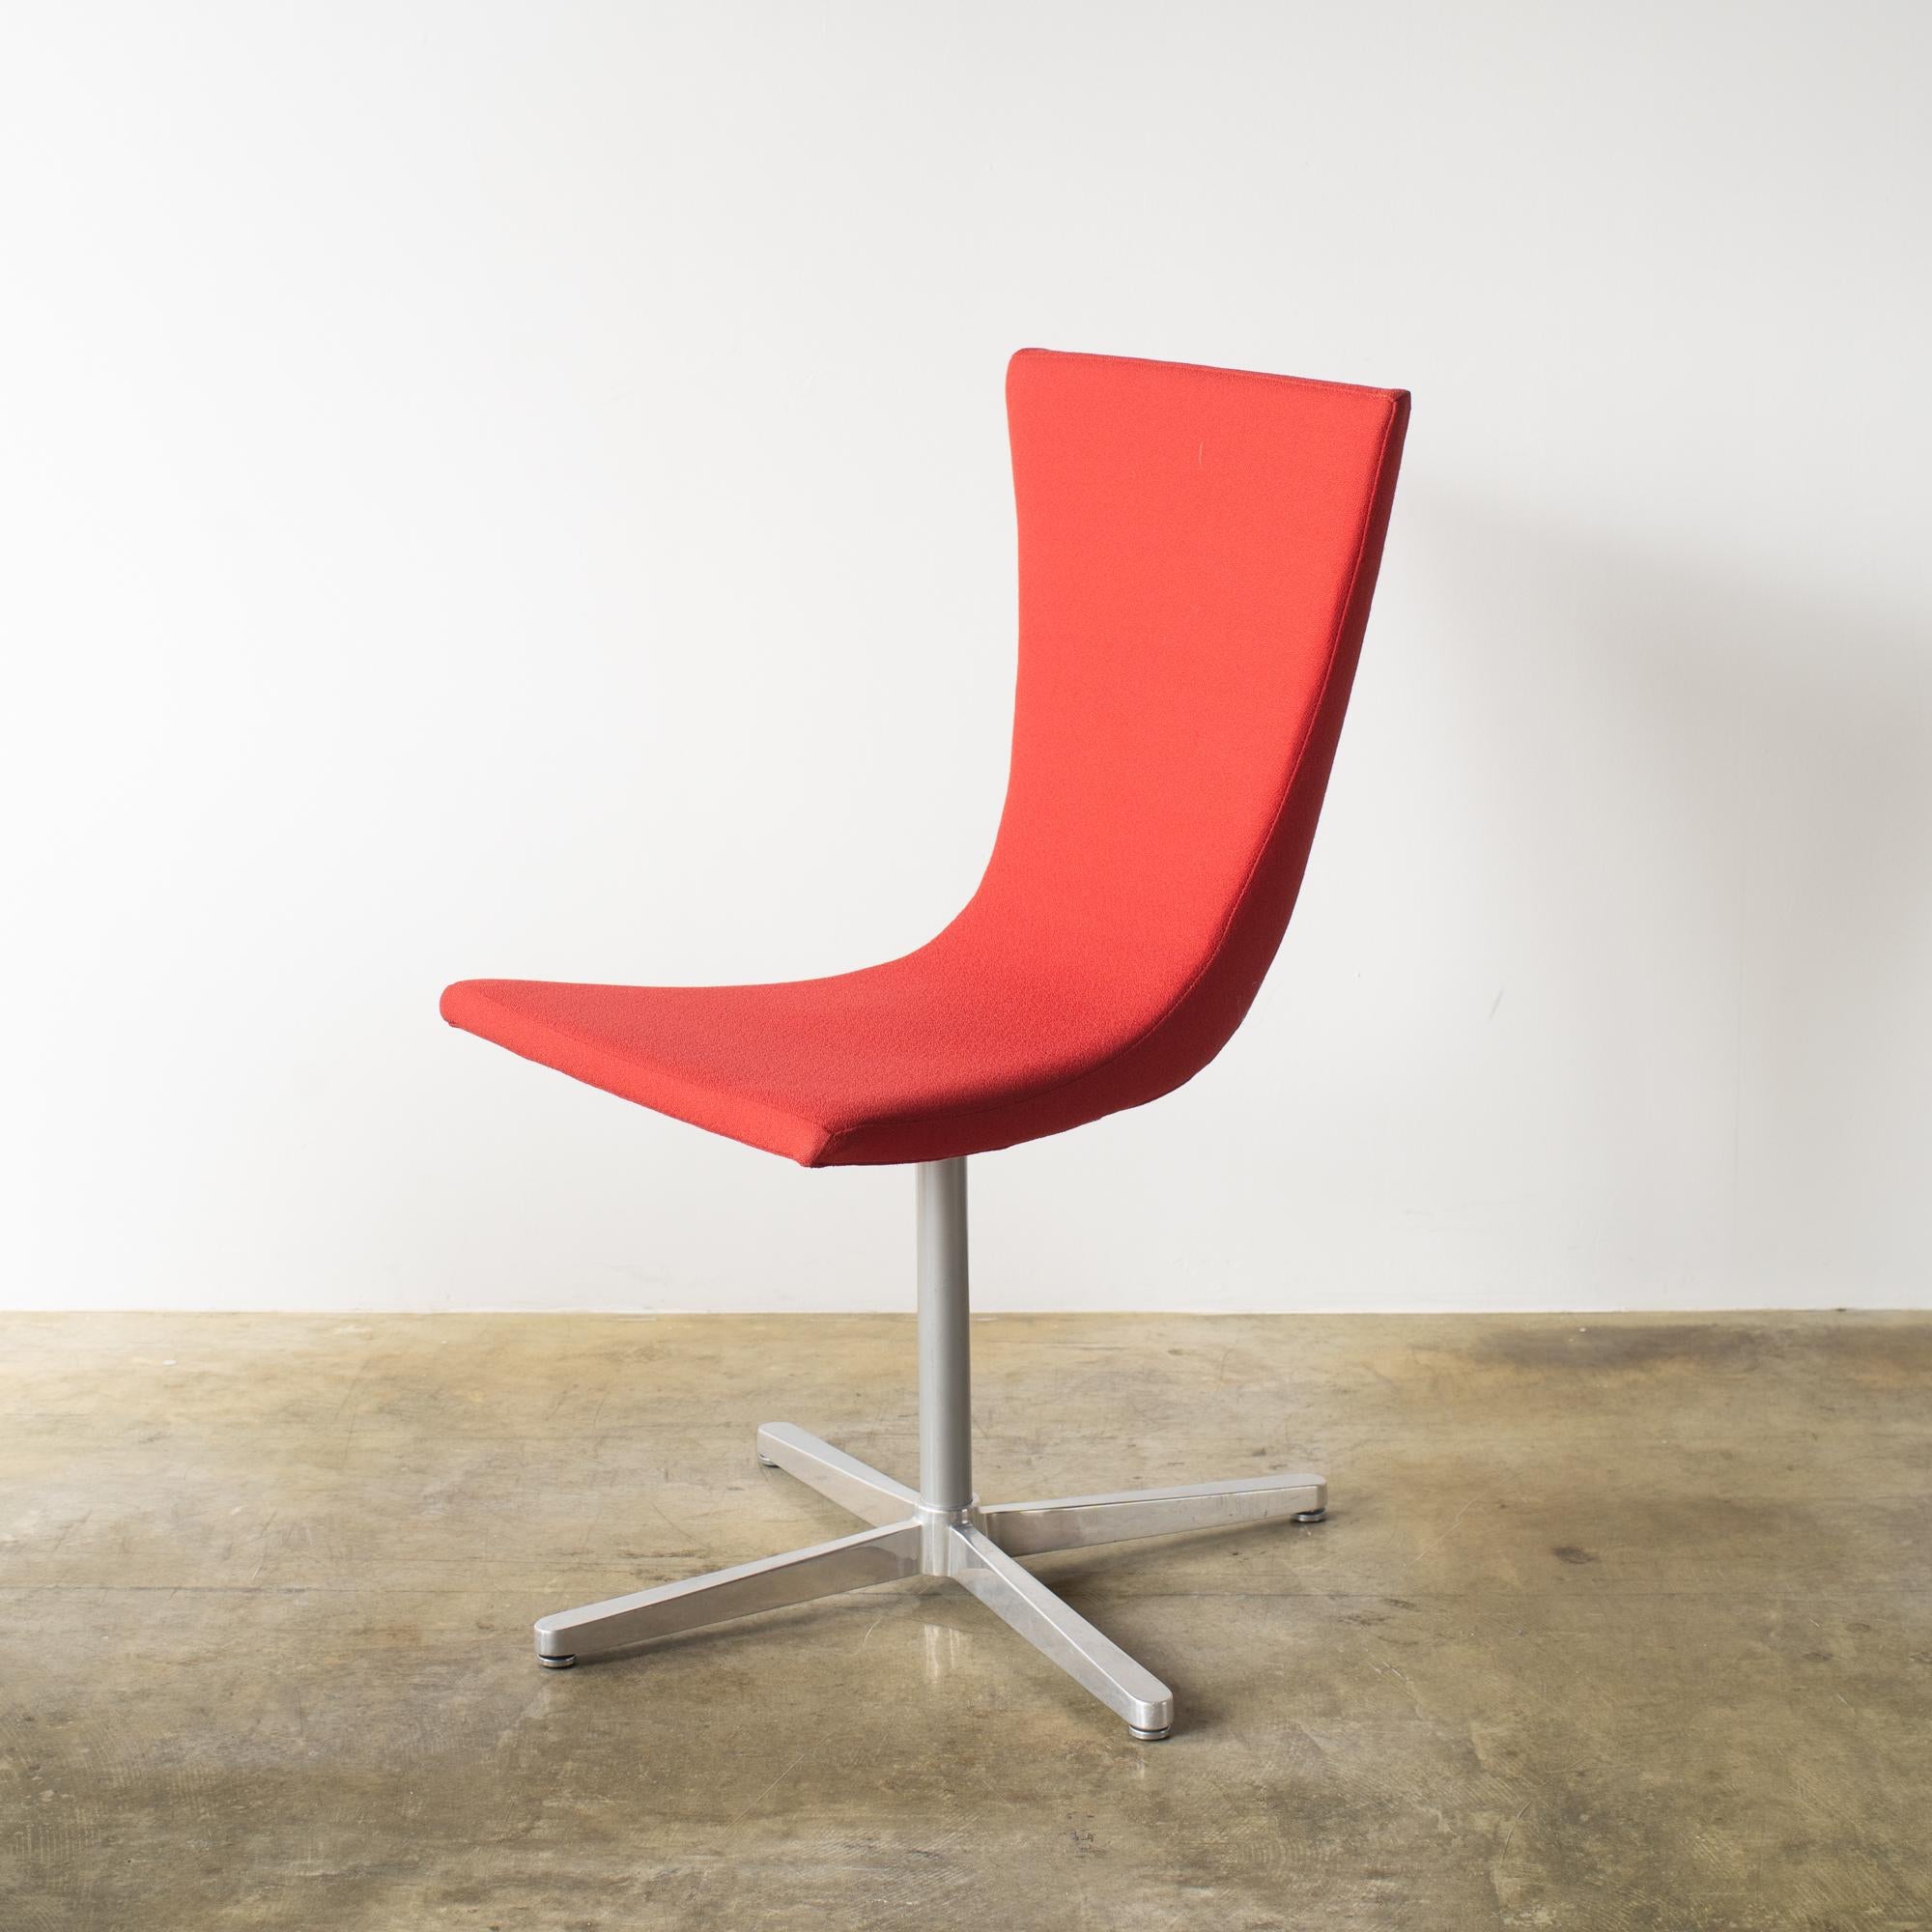 Drehstuhl aus rotem Stoff.  Christian Ghion entwarf es Ende der 90er Jahre für Idee Japan. 
Das ist der Stil der Jahr-2000-Einrichtung und des Designs. Auch ein wirklich tolles Beispiel aus dieser Zeit. 
 